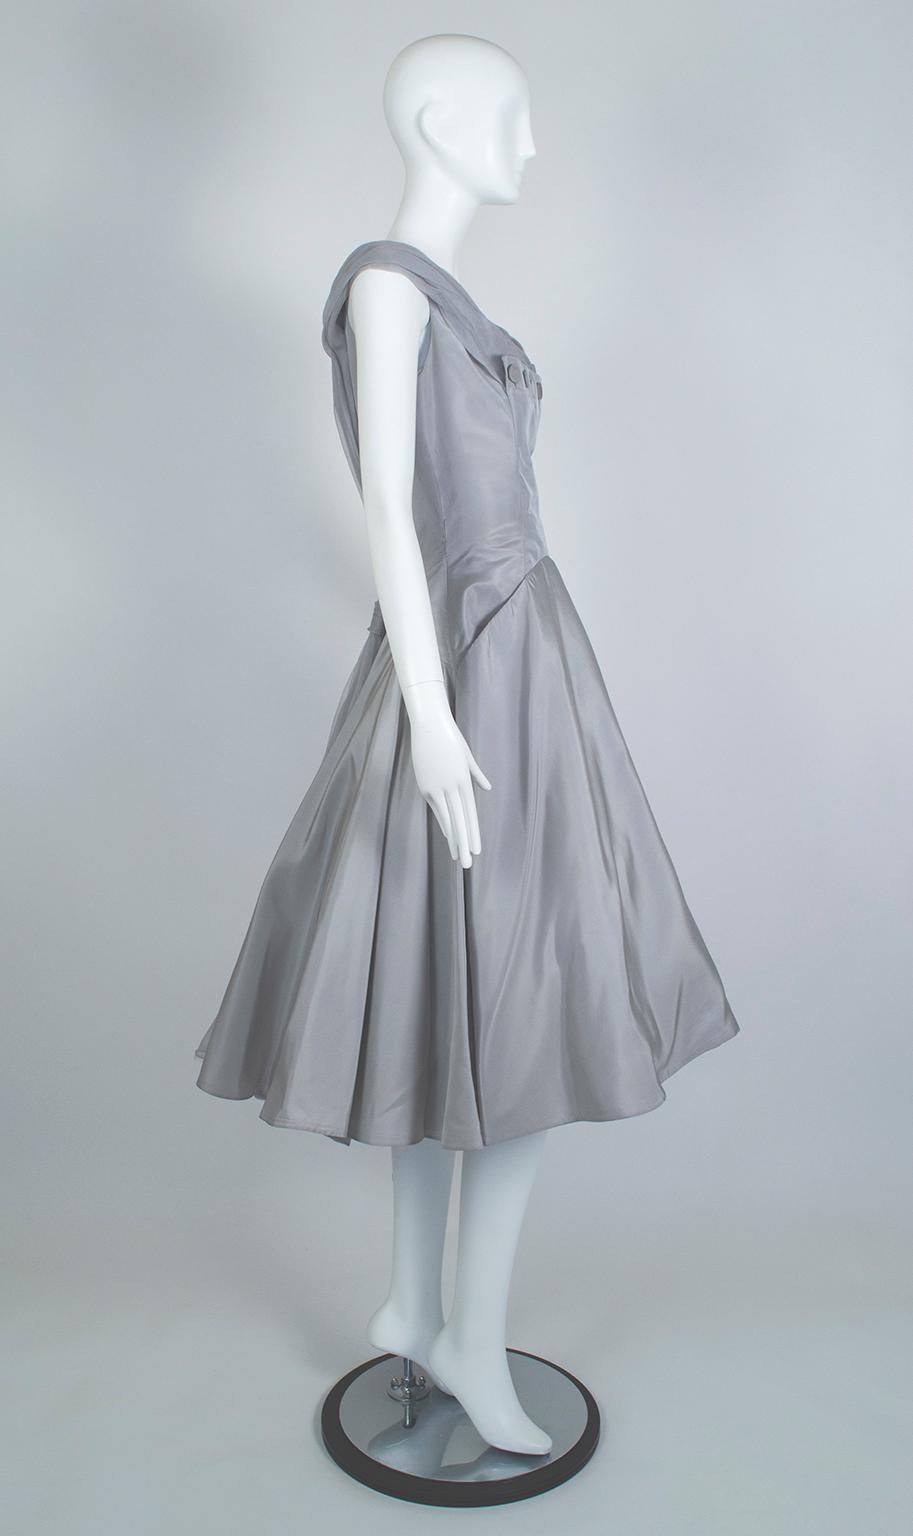 Obwohl seine Entwürfe nicht so bekannt sind wie die von Dior oder Balmain, hat Daniel Werlé atemberaubende Kleider für Hollywood-Schauspielerinnen wie Barbara Stanwyk, Gloria Swanson und Loretta Young entworfen. Sein Engagement für anspruchsvolle